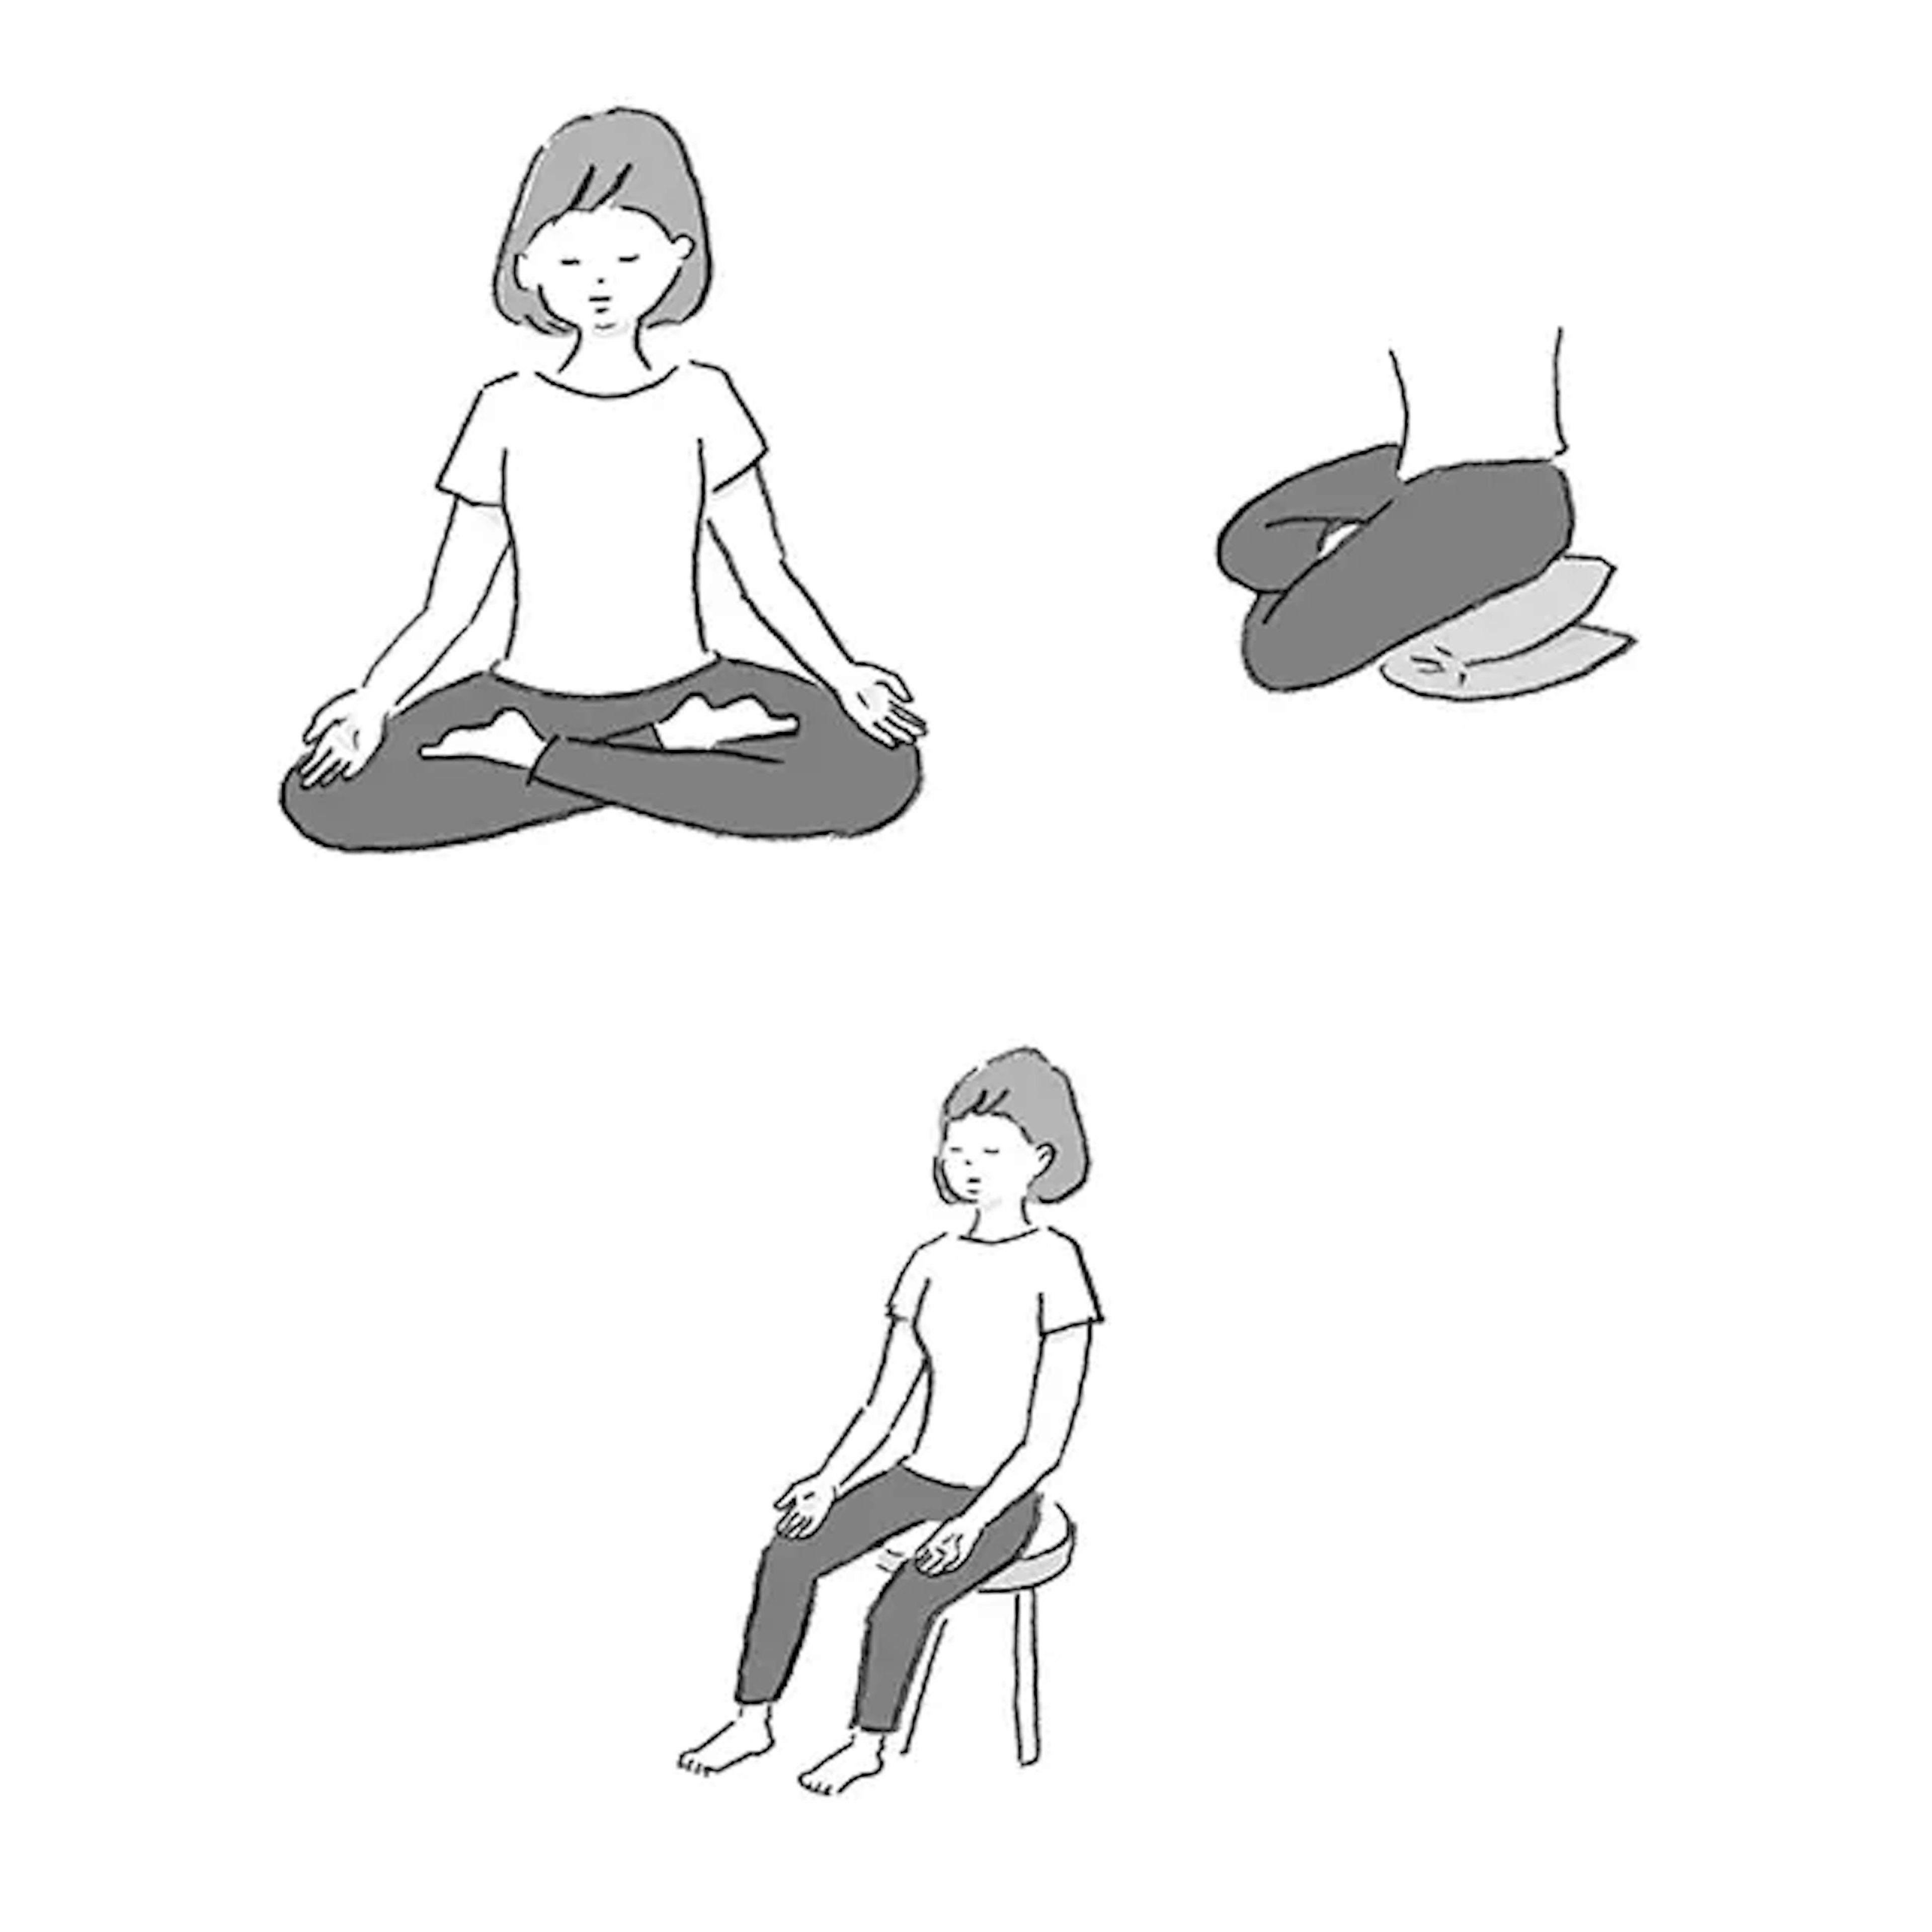 イラスト：あぐらの格好、椅子に座った格好で瞑想している様子